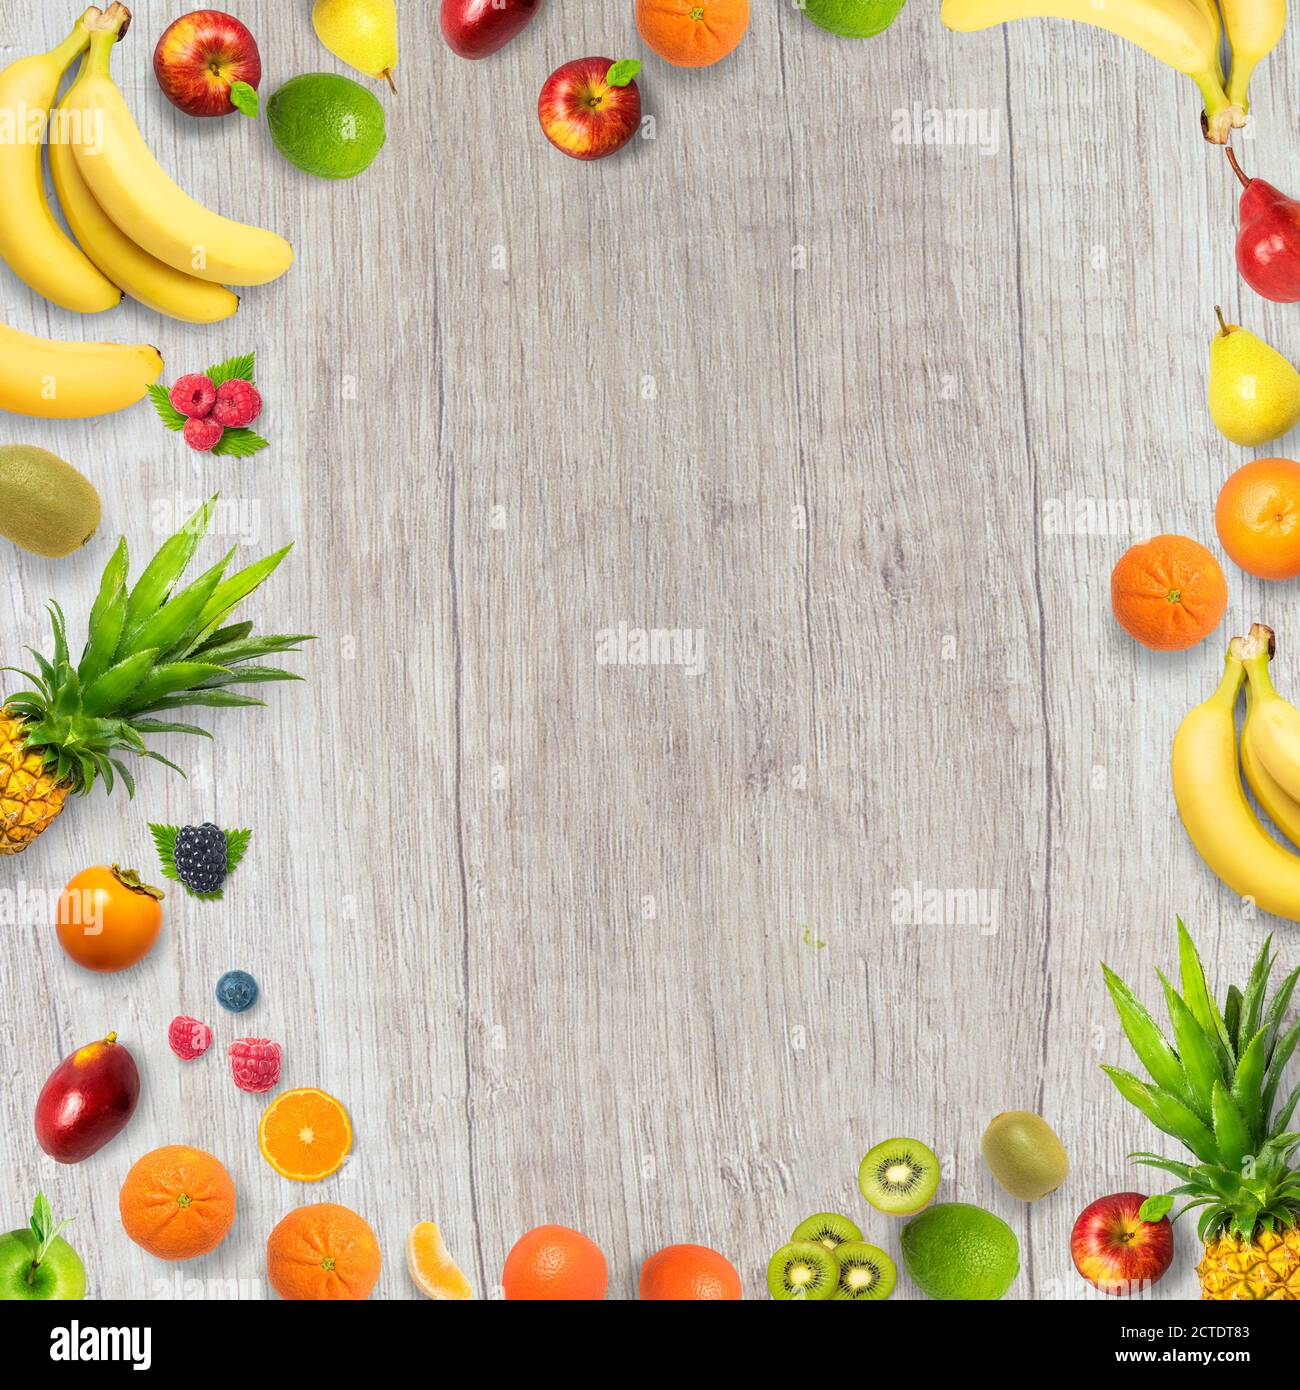 Isolierte flache Ansicht von oben von verschiedenen Arten von Früchten auf einem hölzernen Hintergrund mit Kopierraum. Konzept von gesund, Bio, Ernährung und frisch. Früchte b Stockfoto